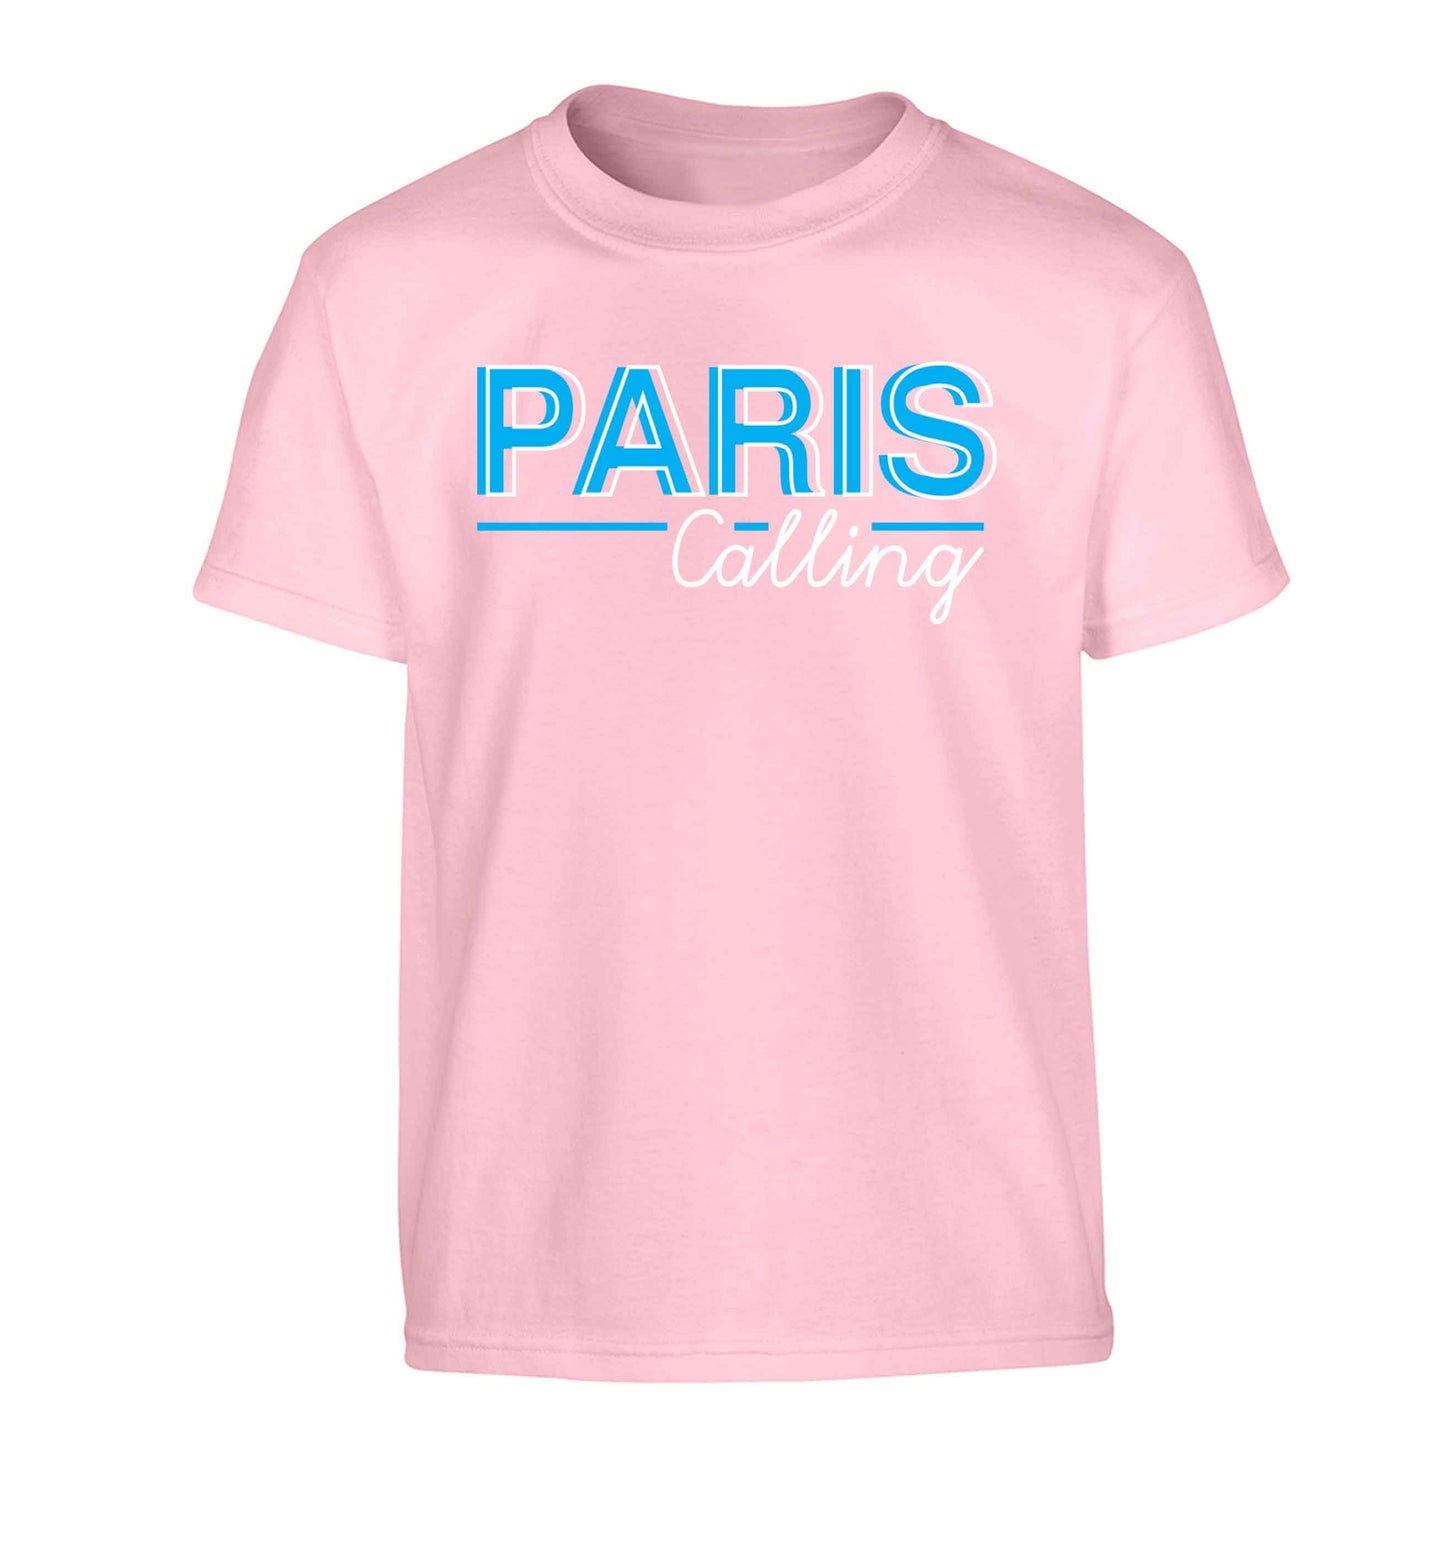 Paris calling Children's light pink Tshirt 12-13 Years